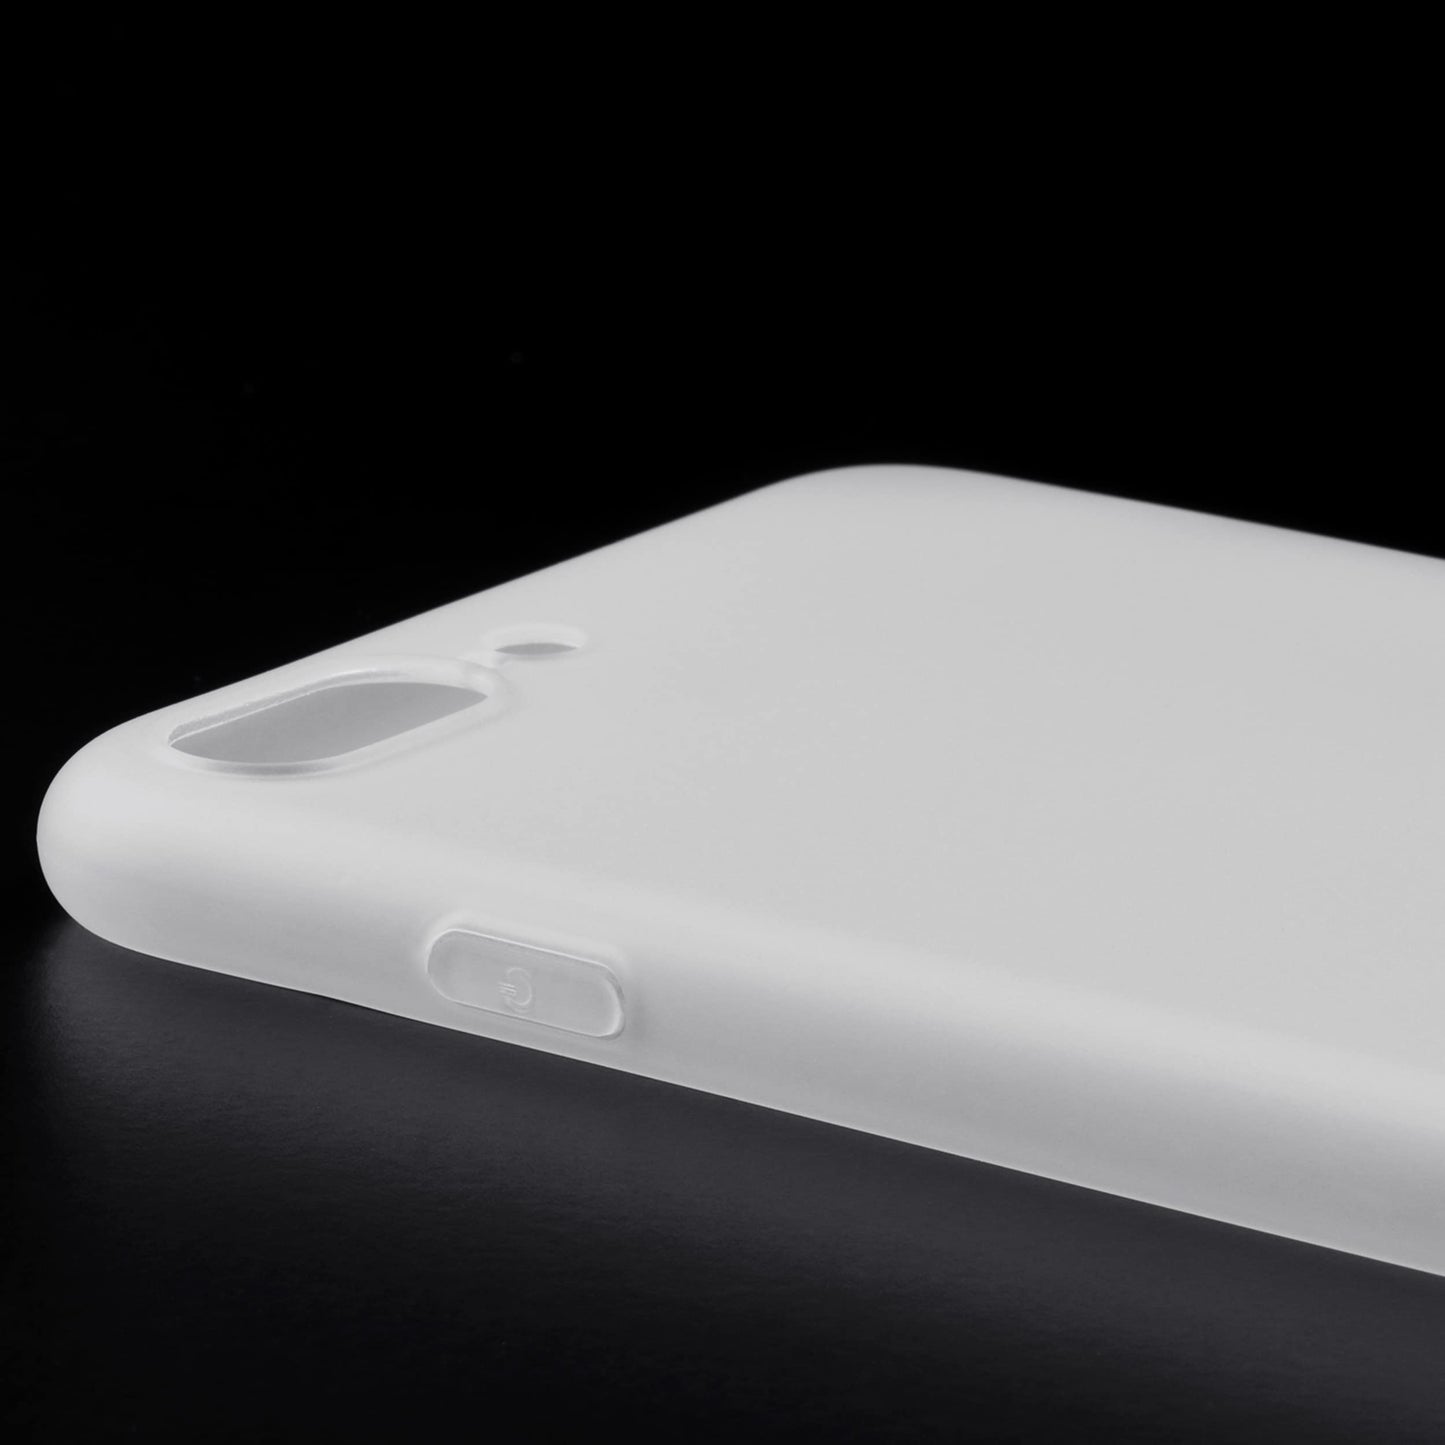 iPhone 7 Plus - Slim-Case